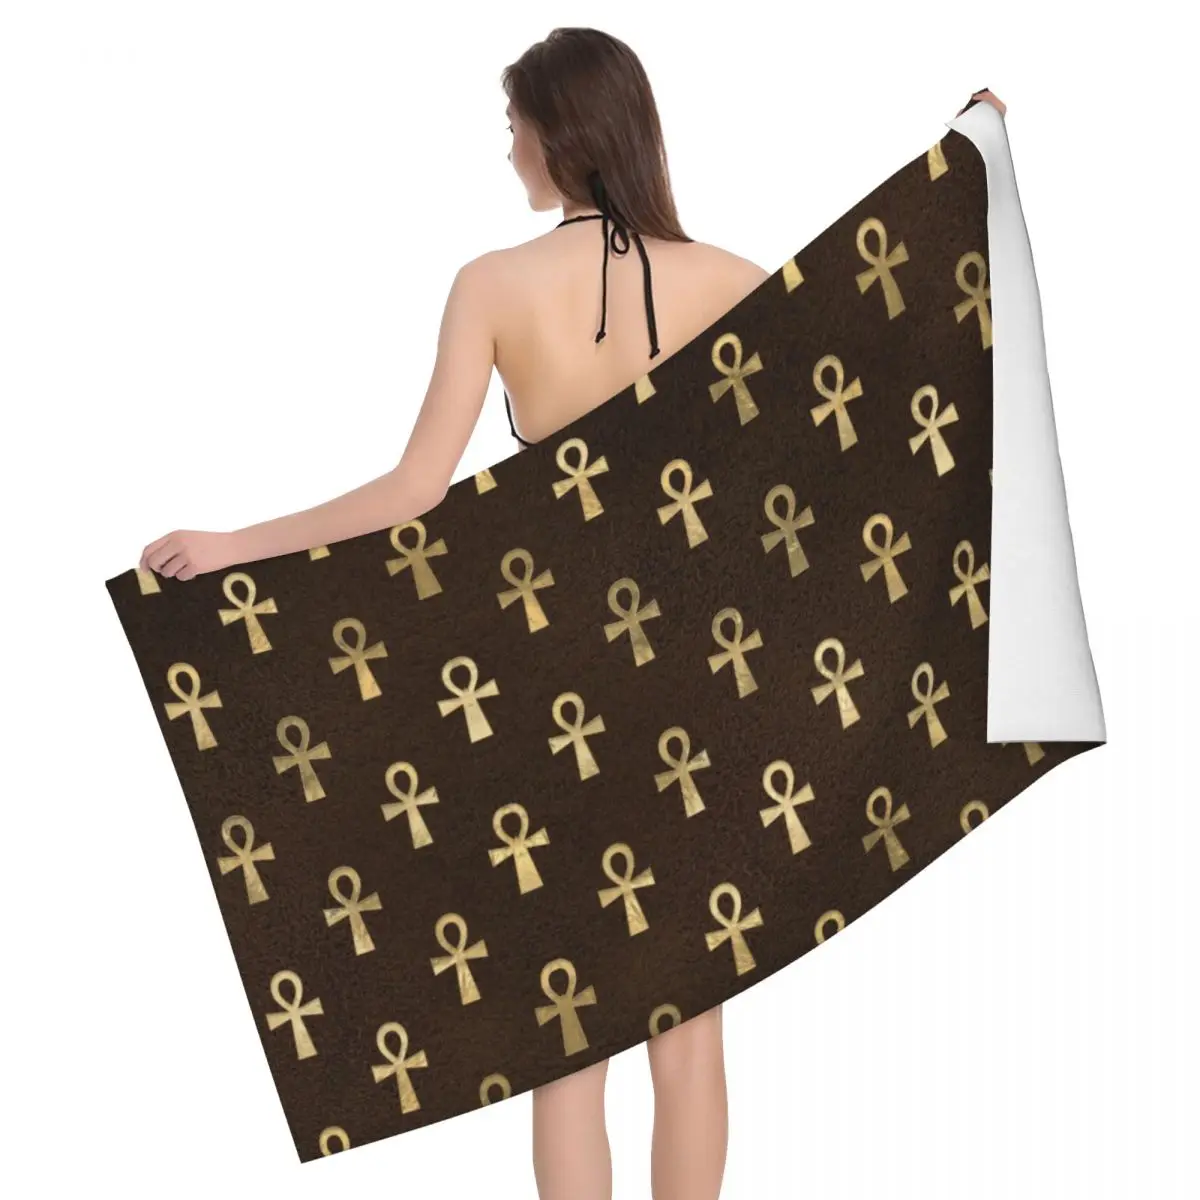 

Египетское пляжное полотенце с рисунком Анкх, быстросохнущее египетское иероглифическое символовое, мягкие льняные полотенца из микрофибры для ванной комнаты и сауны